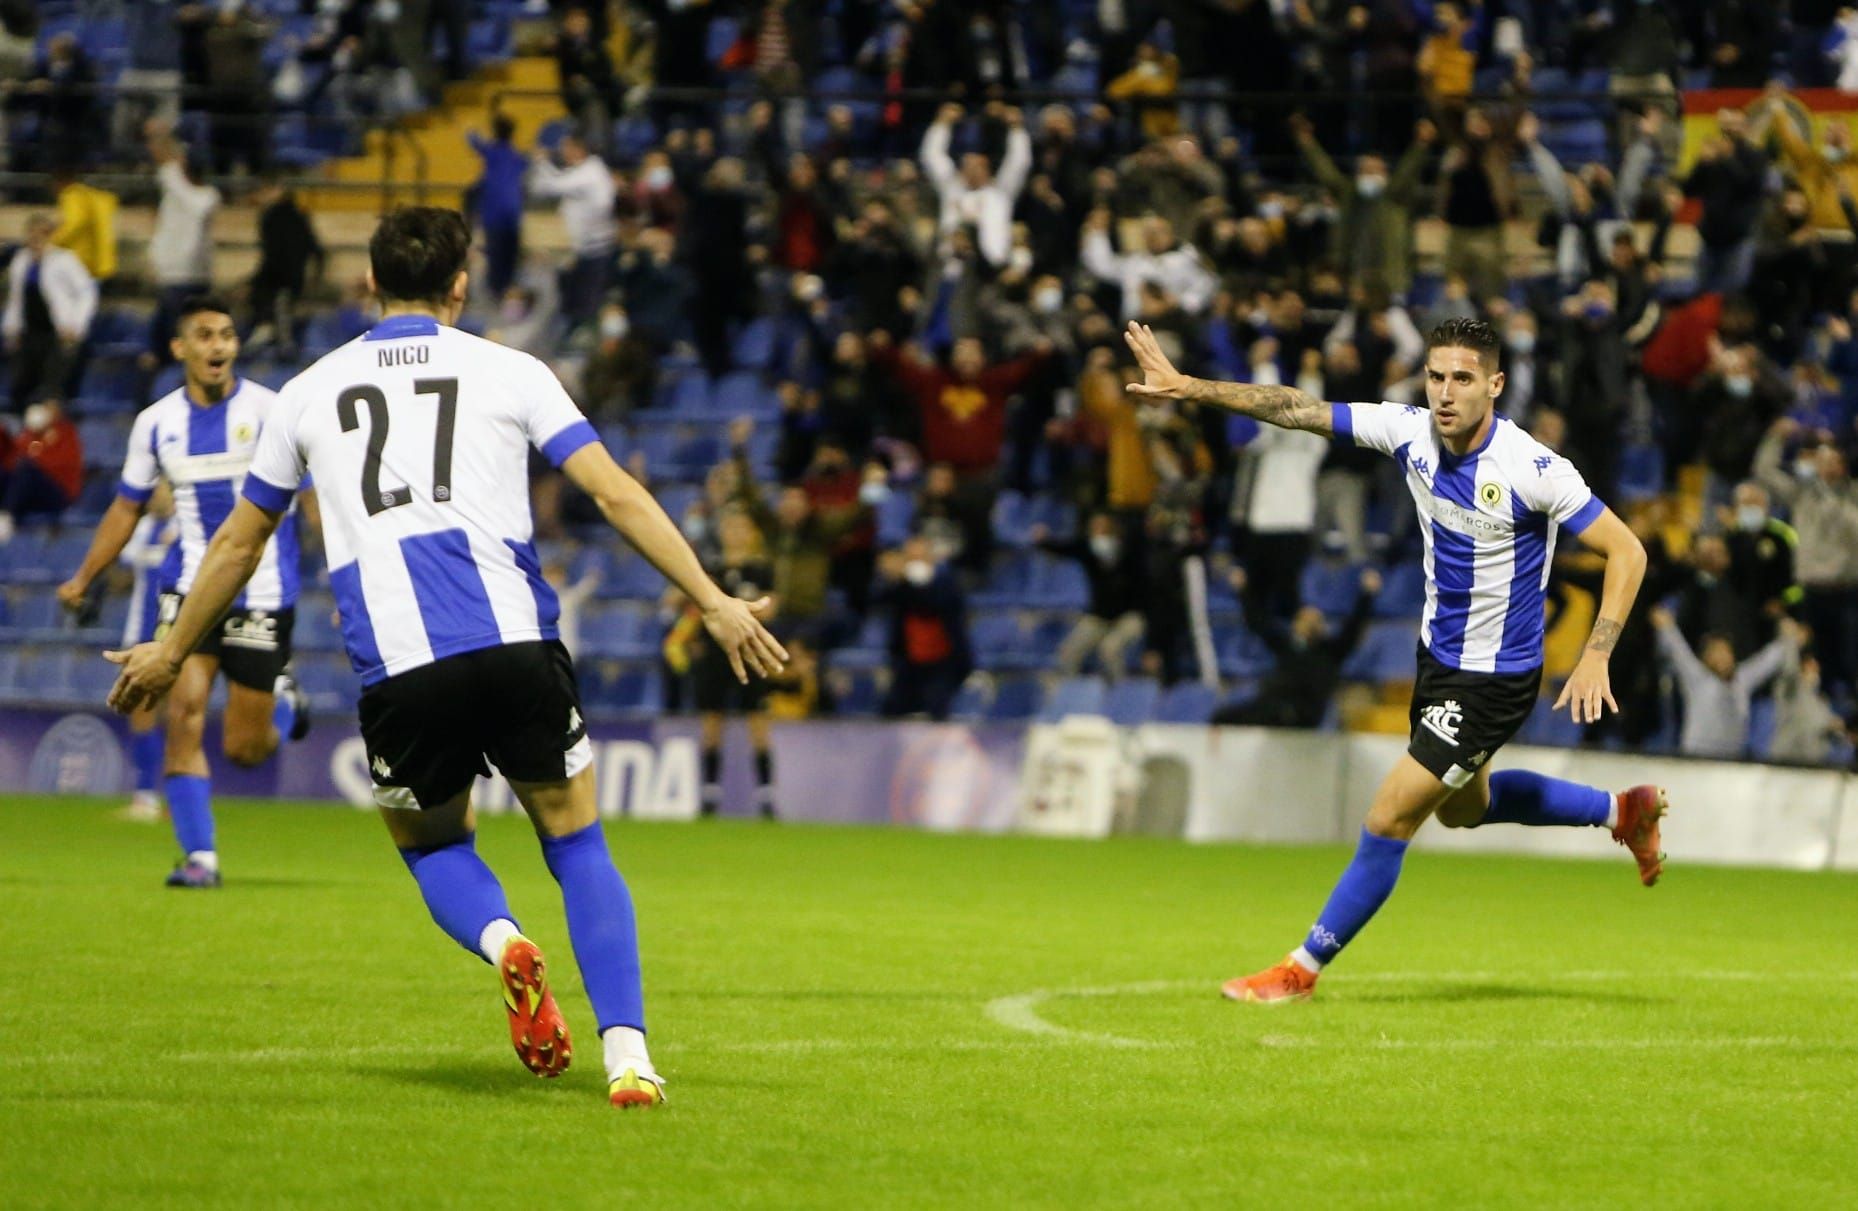 El Hércules golea al Murcia y logra un triunfo balsámico (3-0)